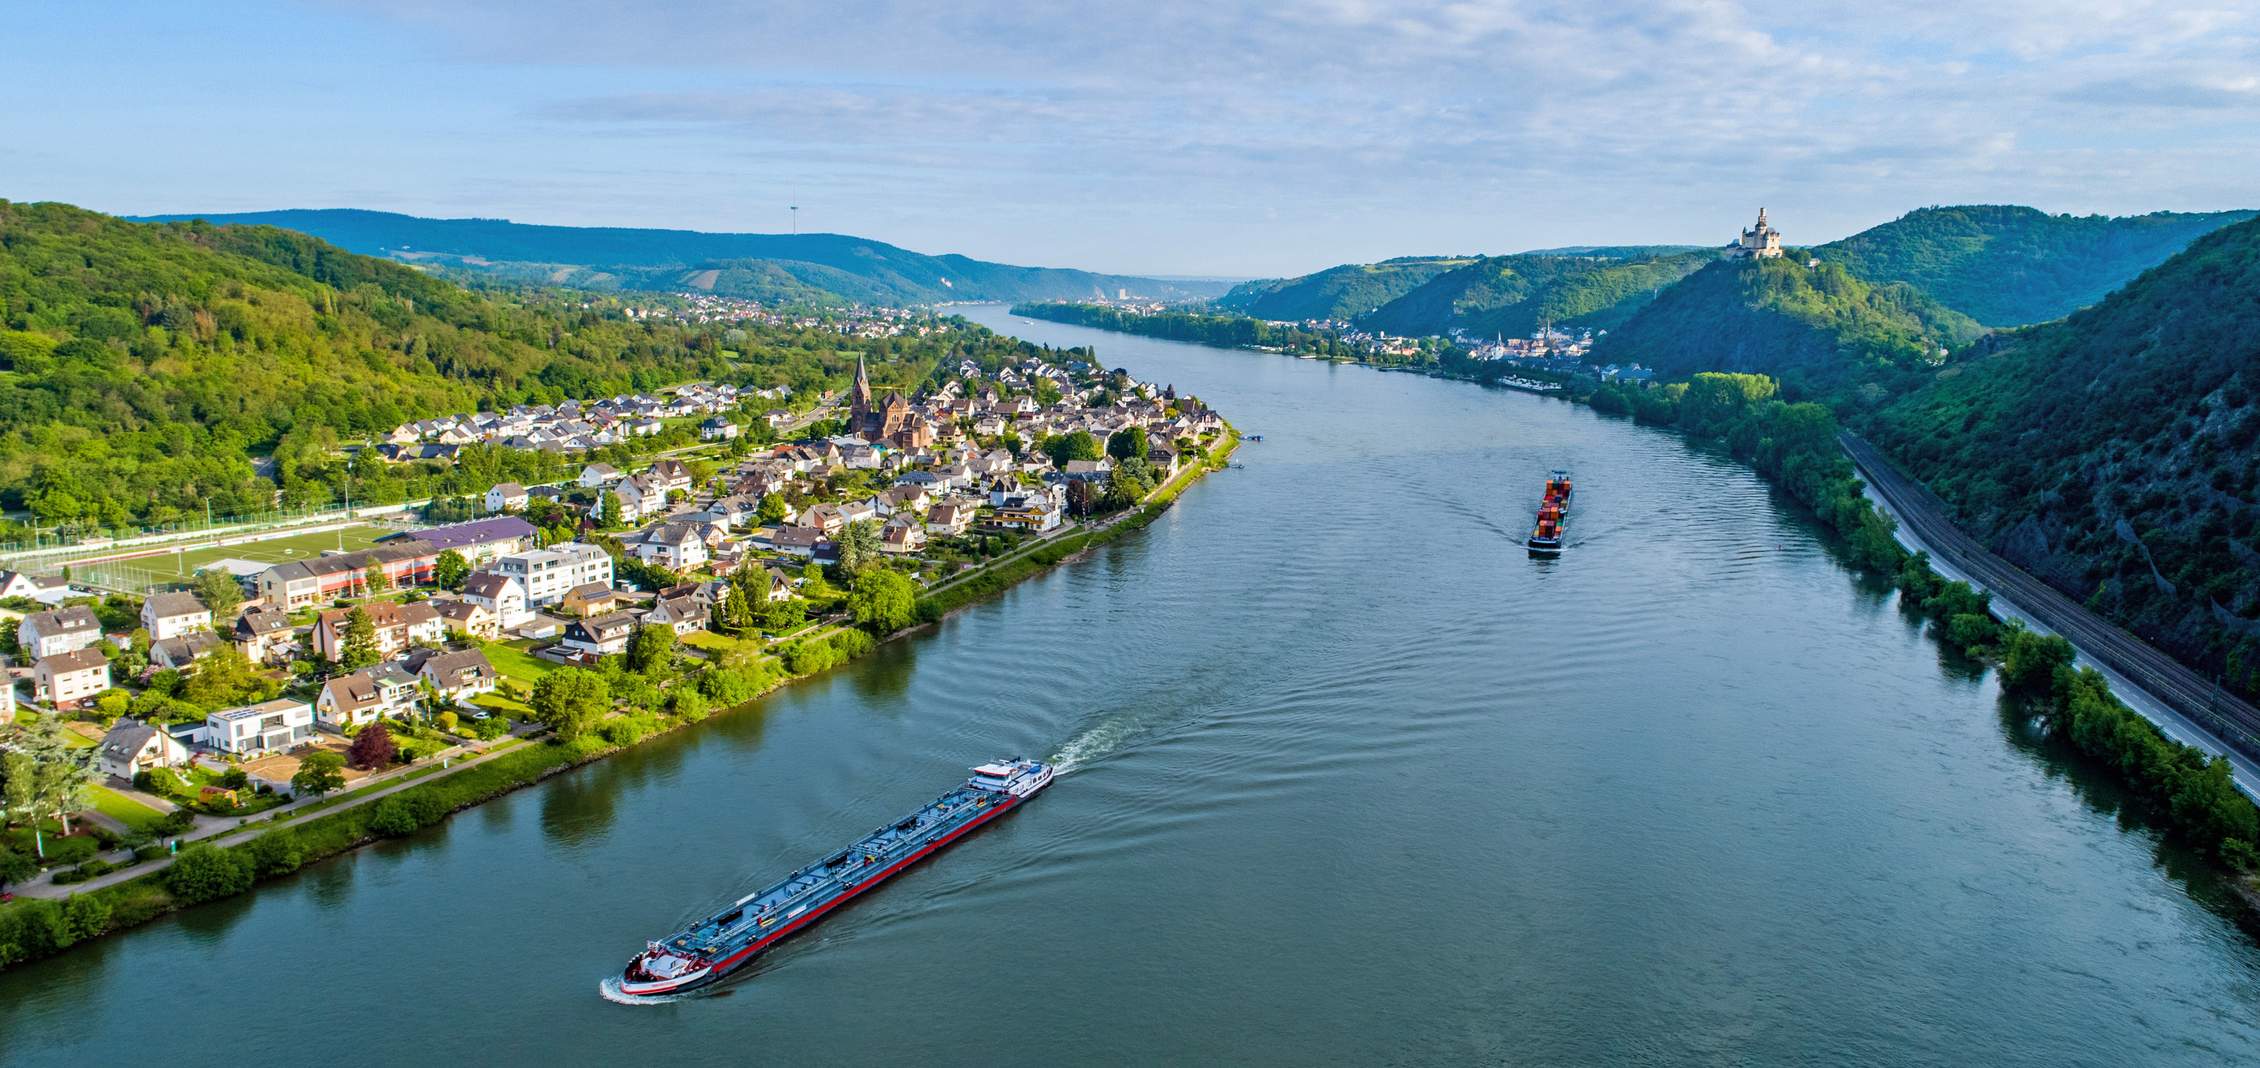 Erlebnis Rheinbogen – Aktiv die Kulturschätze erleben